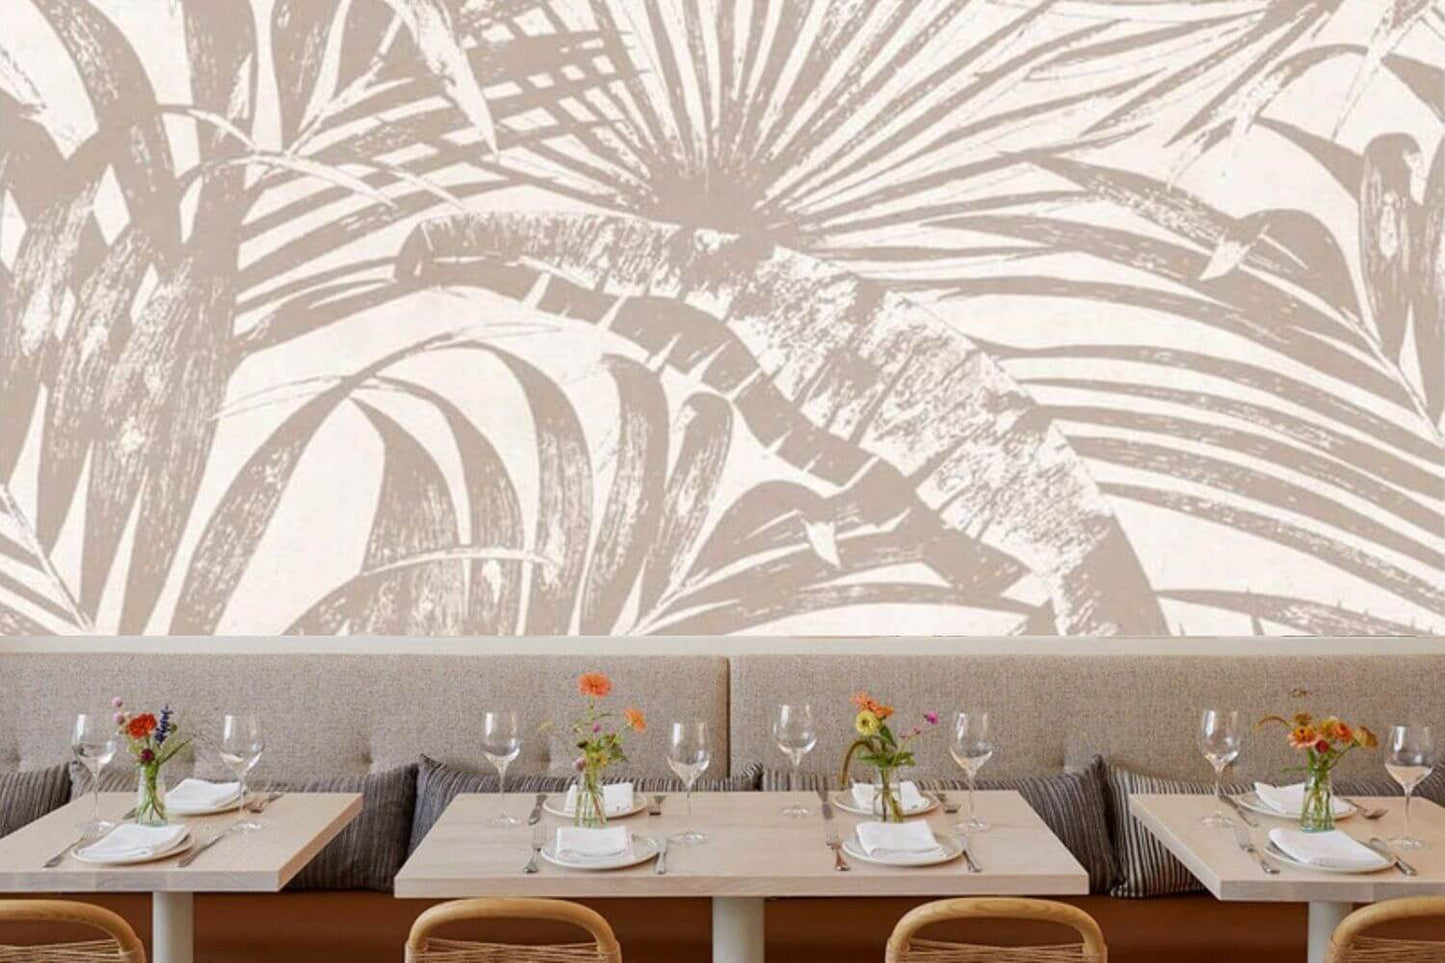 Neutral Palm Leaves Mural Wallpaper (SqM)